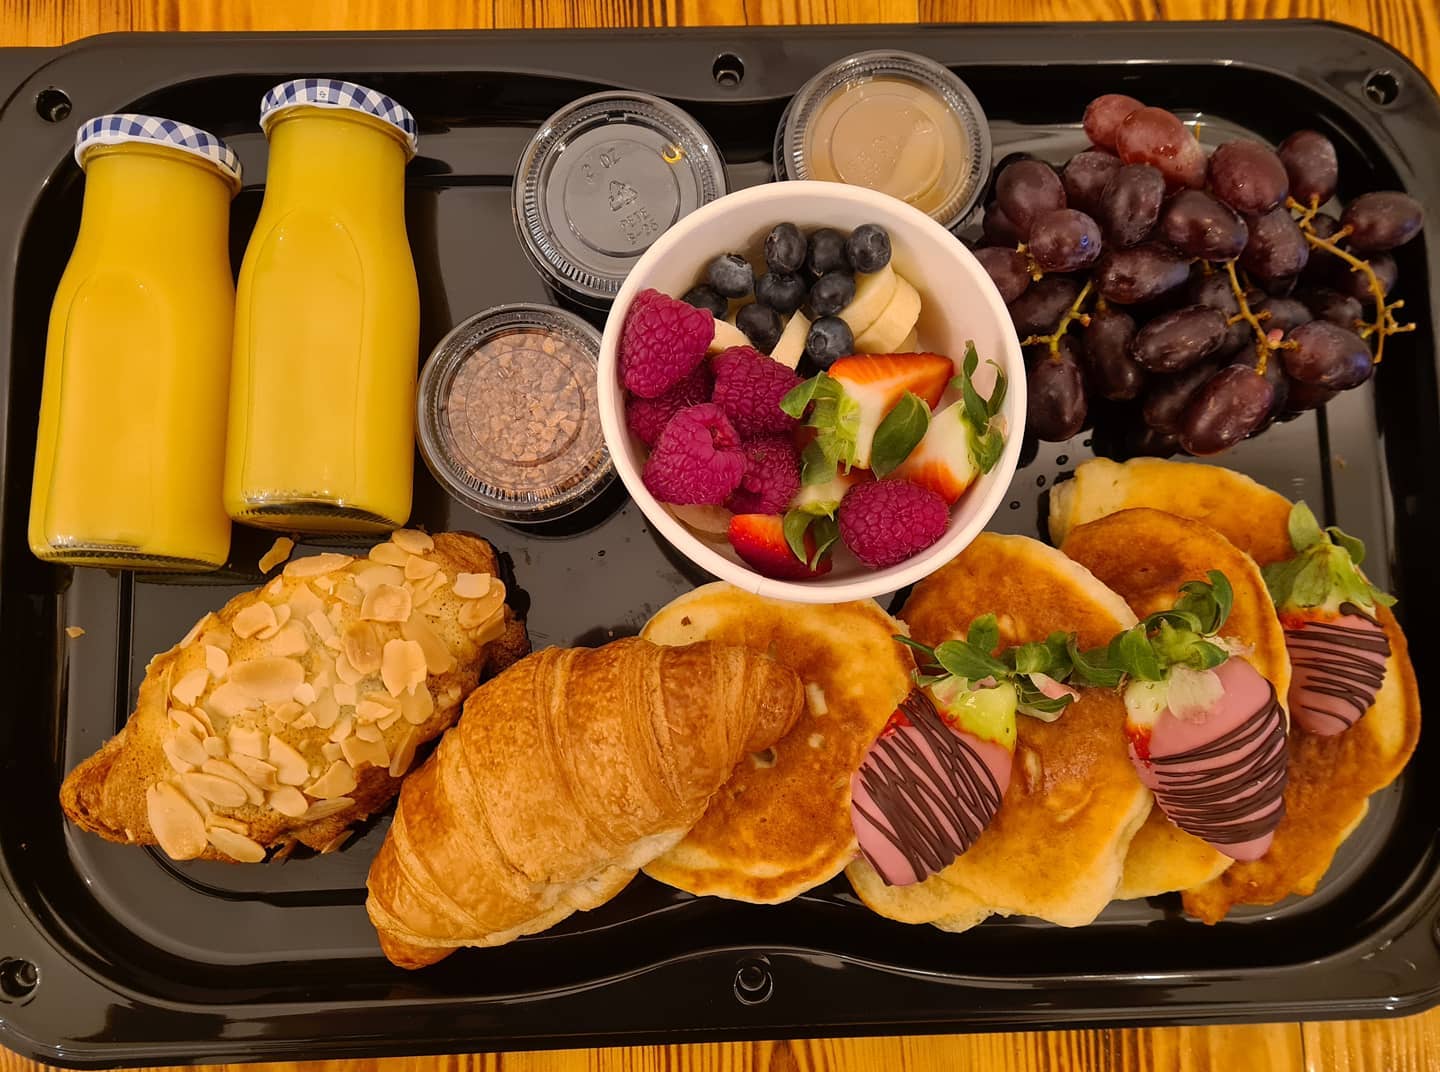 A takeaway breakfast platter